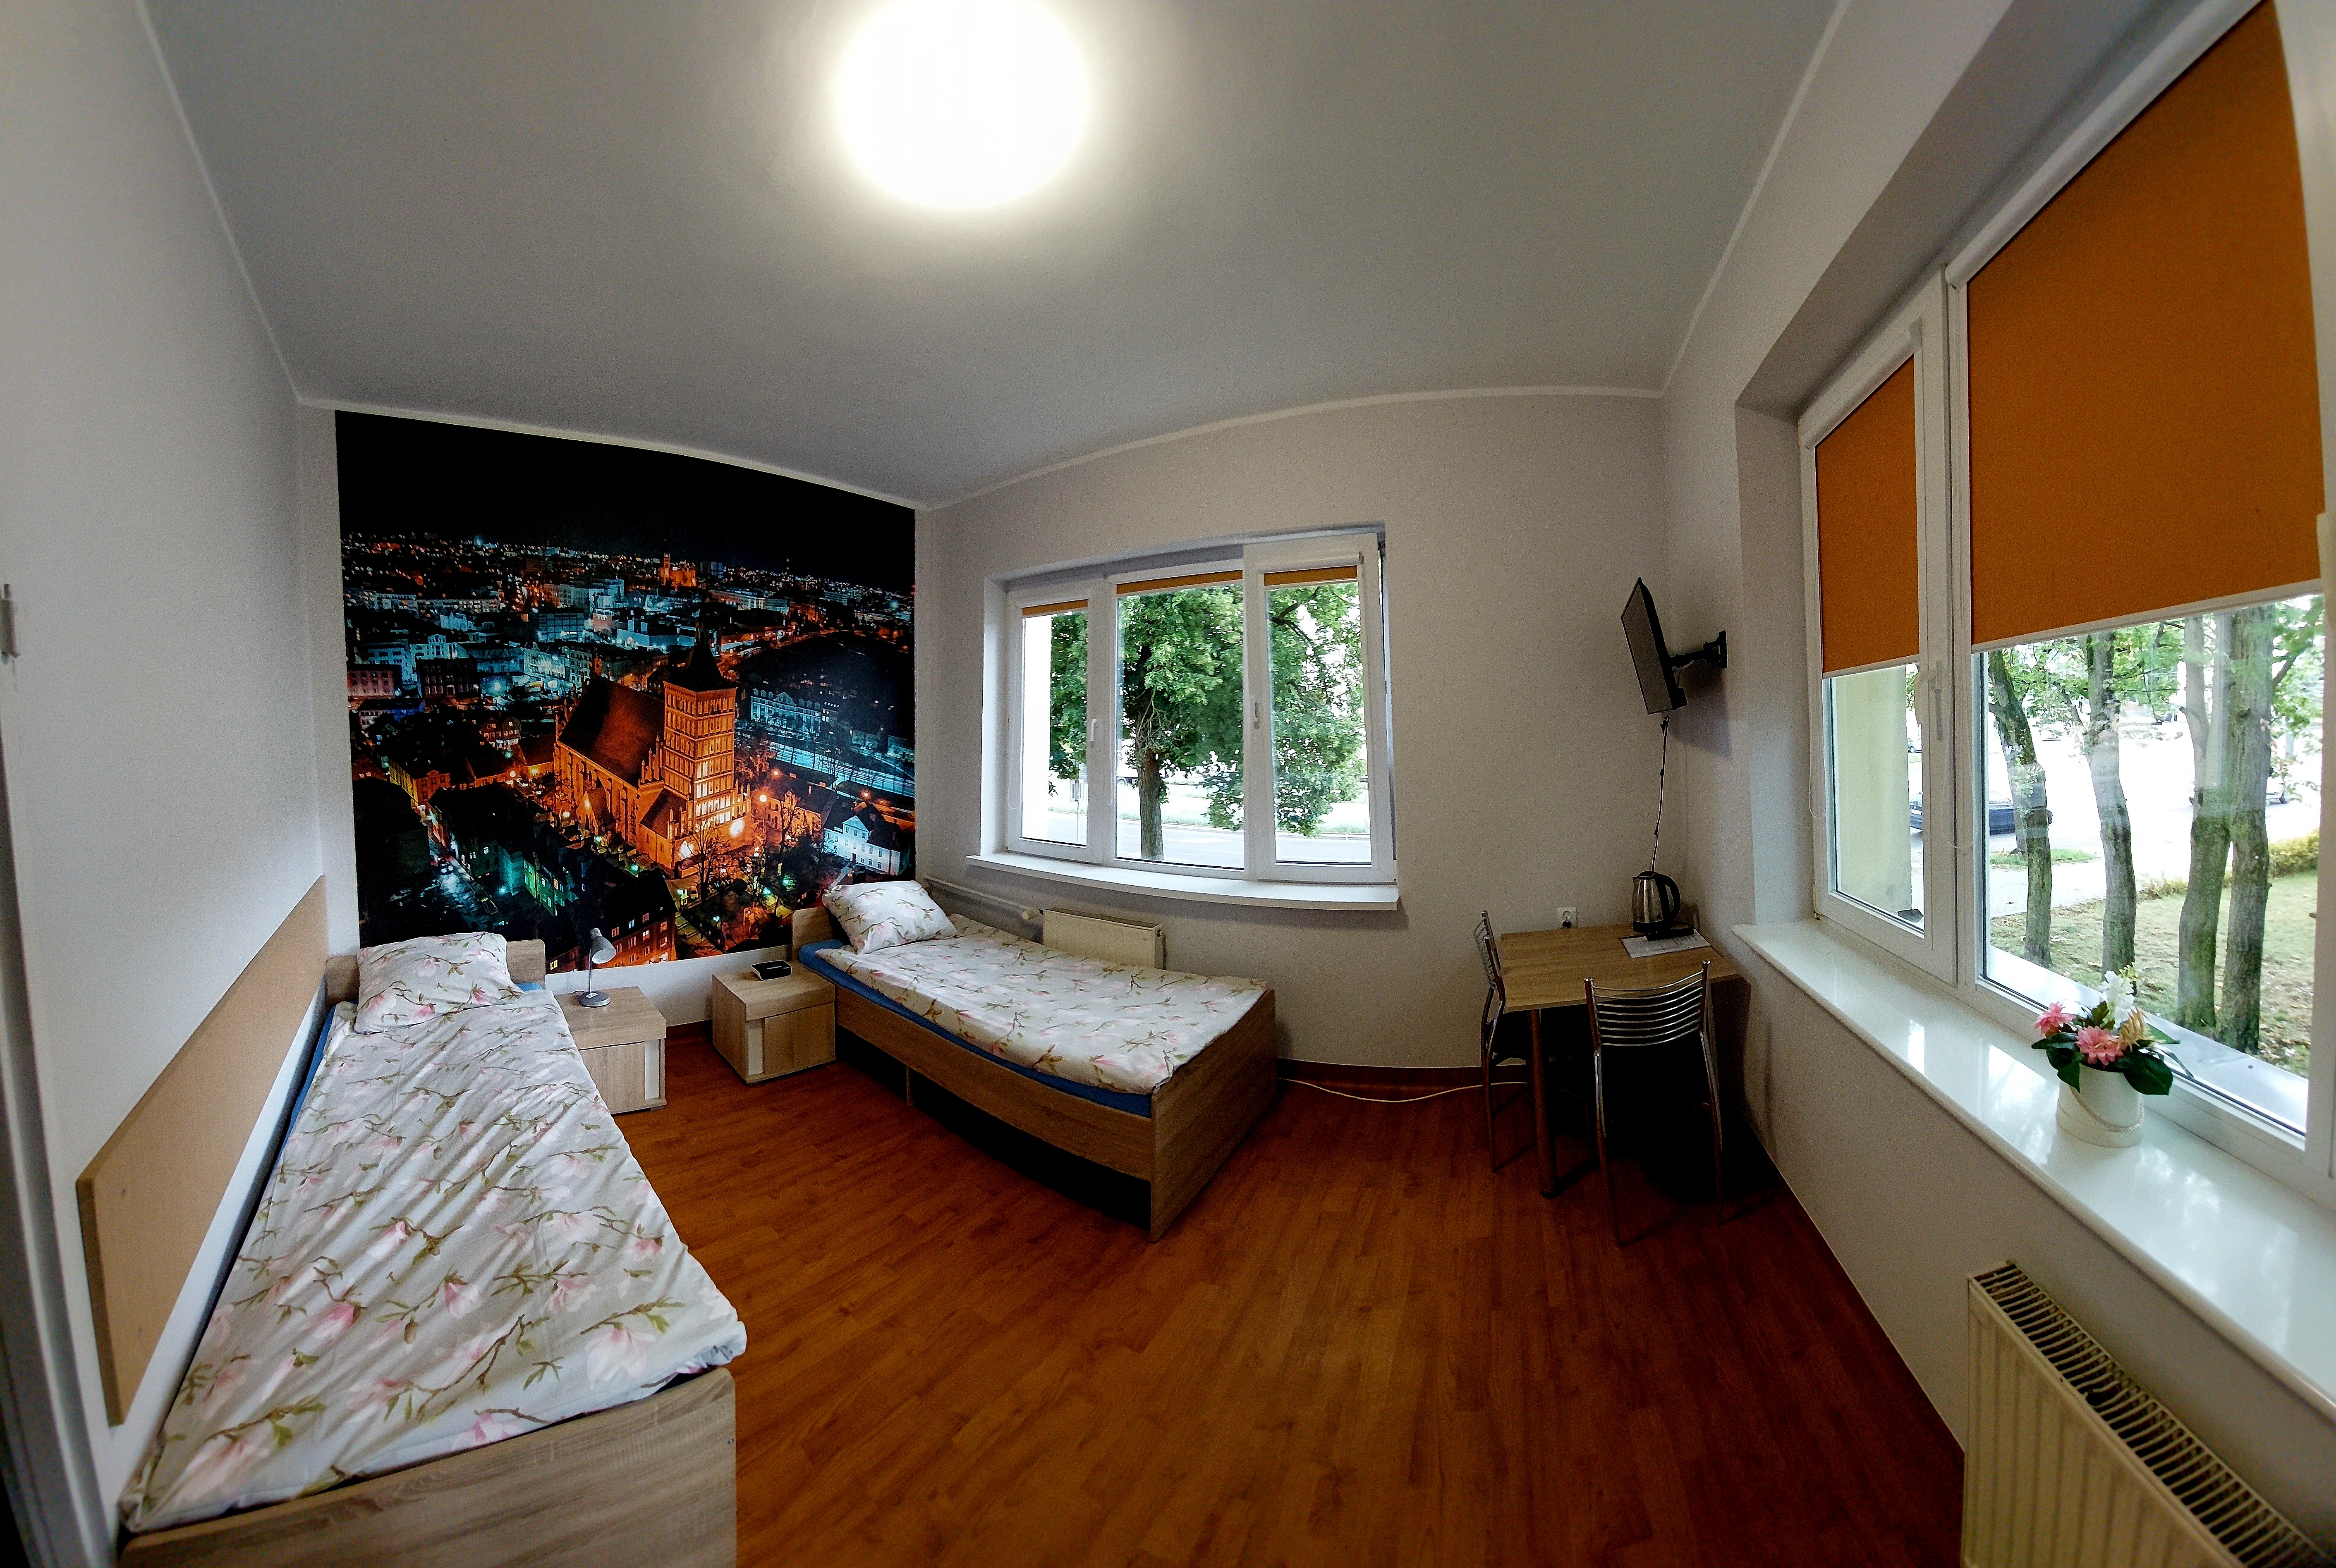 Двухместный номер с ванной комнатой в объекте № 1 Kosciuszko. Обои на заднем плане на стене с изображением Ольштына с высоты птичьего полета.  